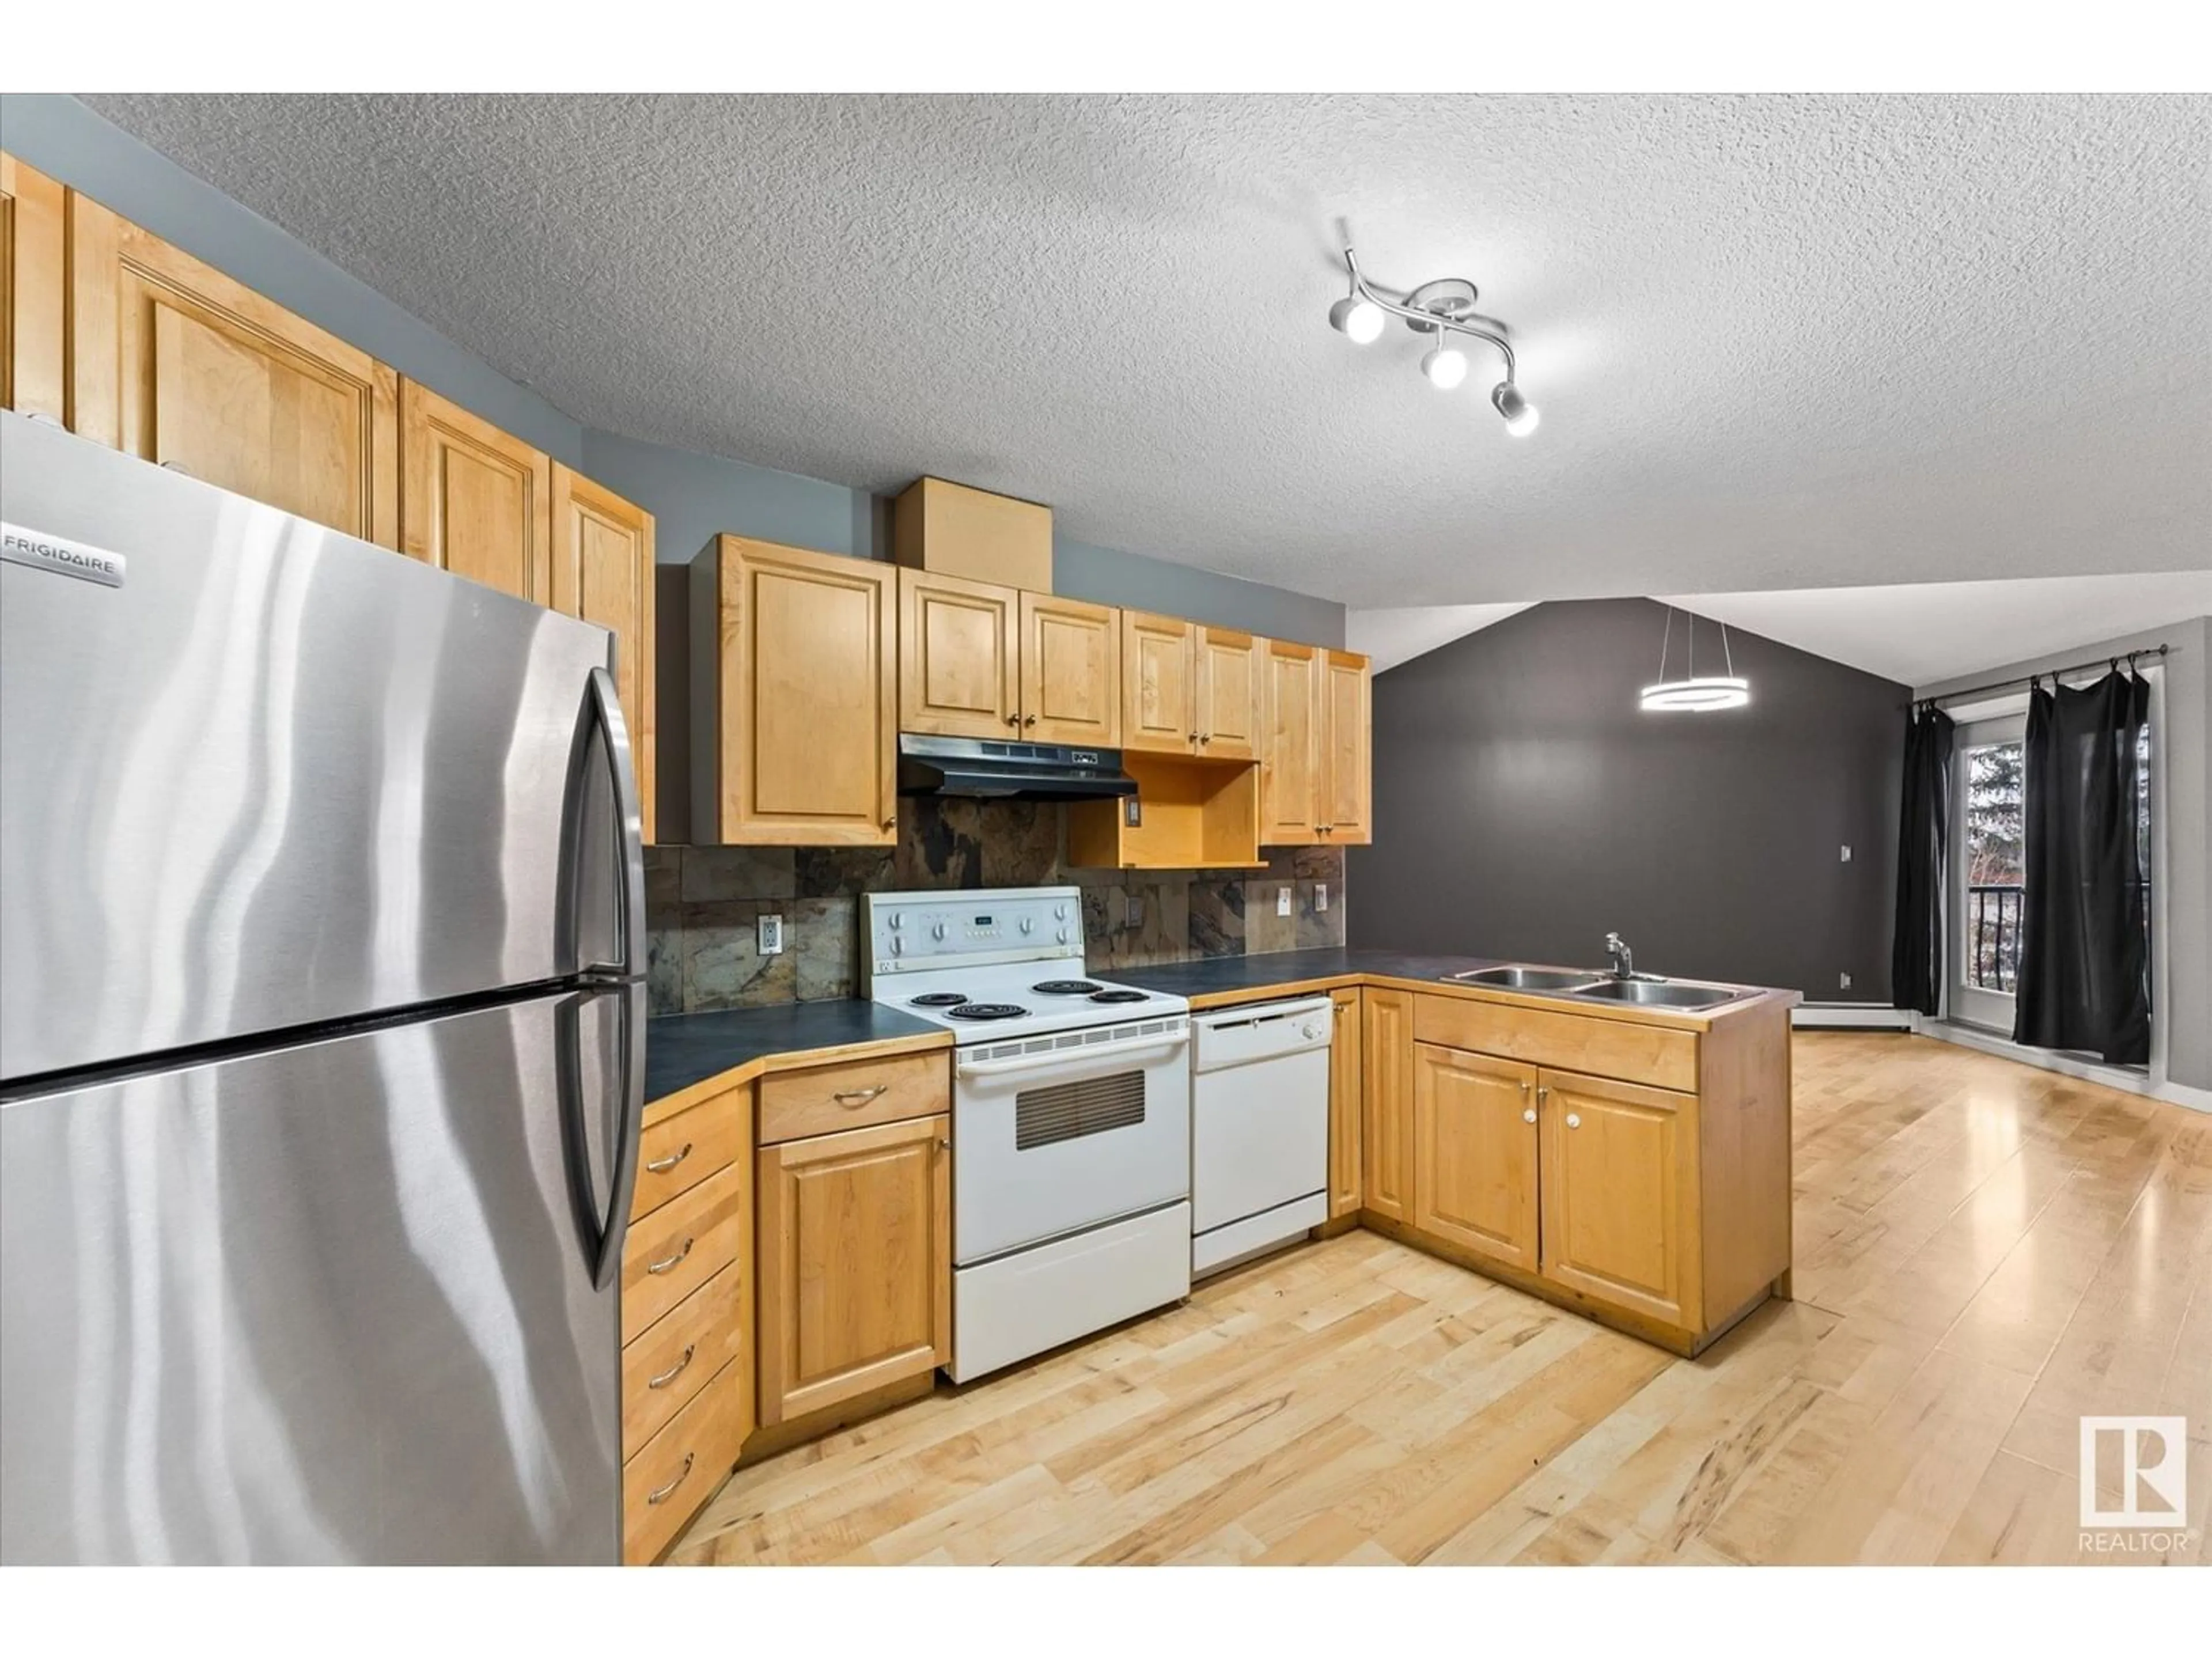 Standard kitchen for #204 9336 JASPER AV NW, Edmonton Alberta T5H3T5